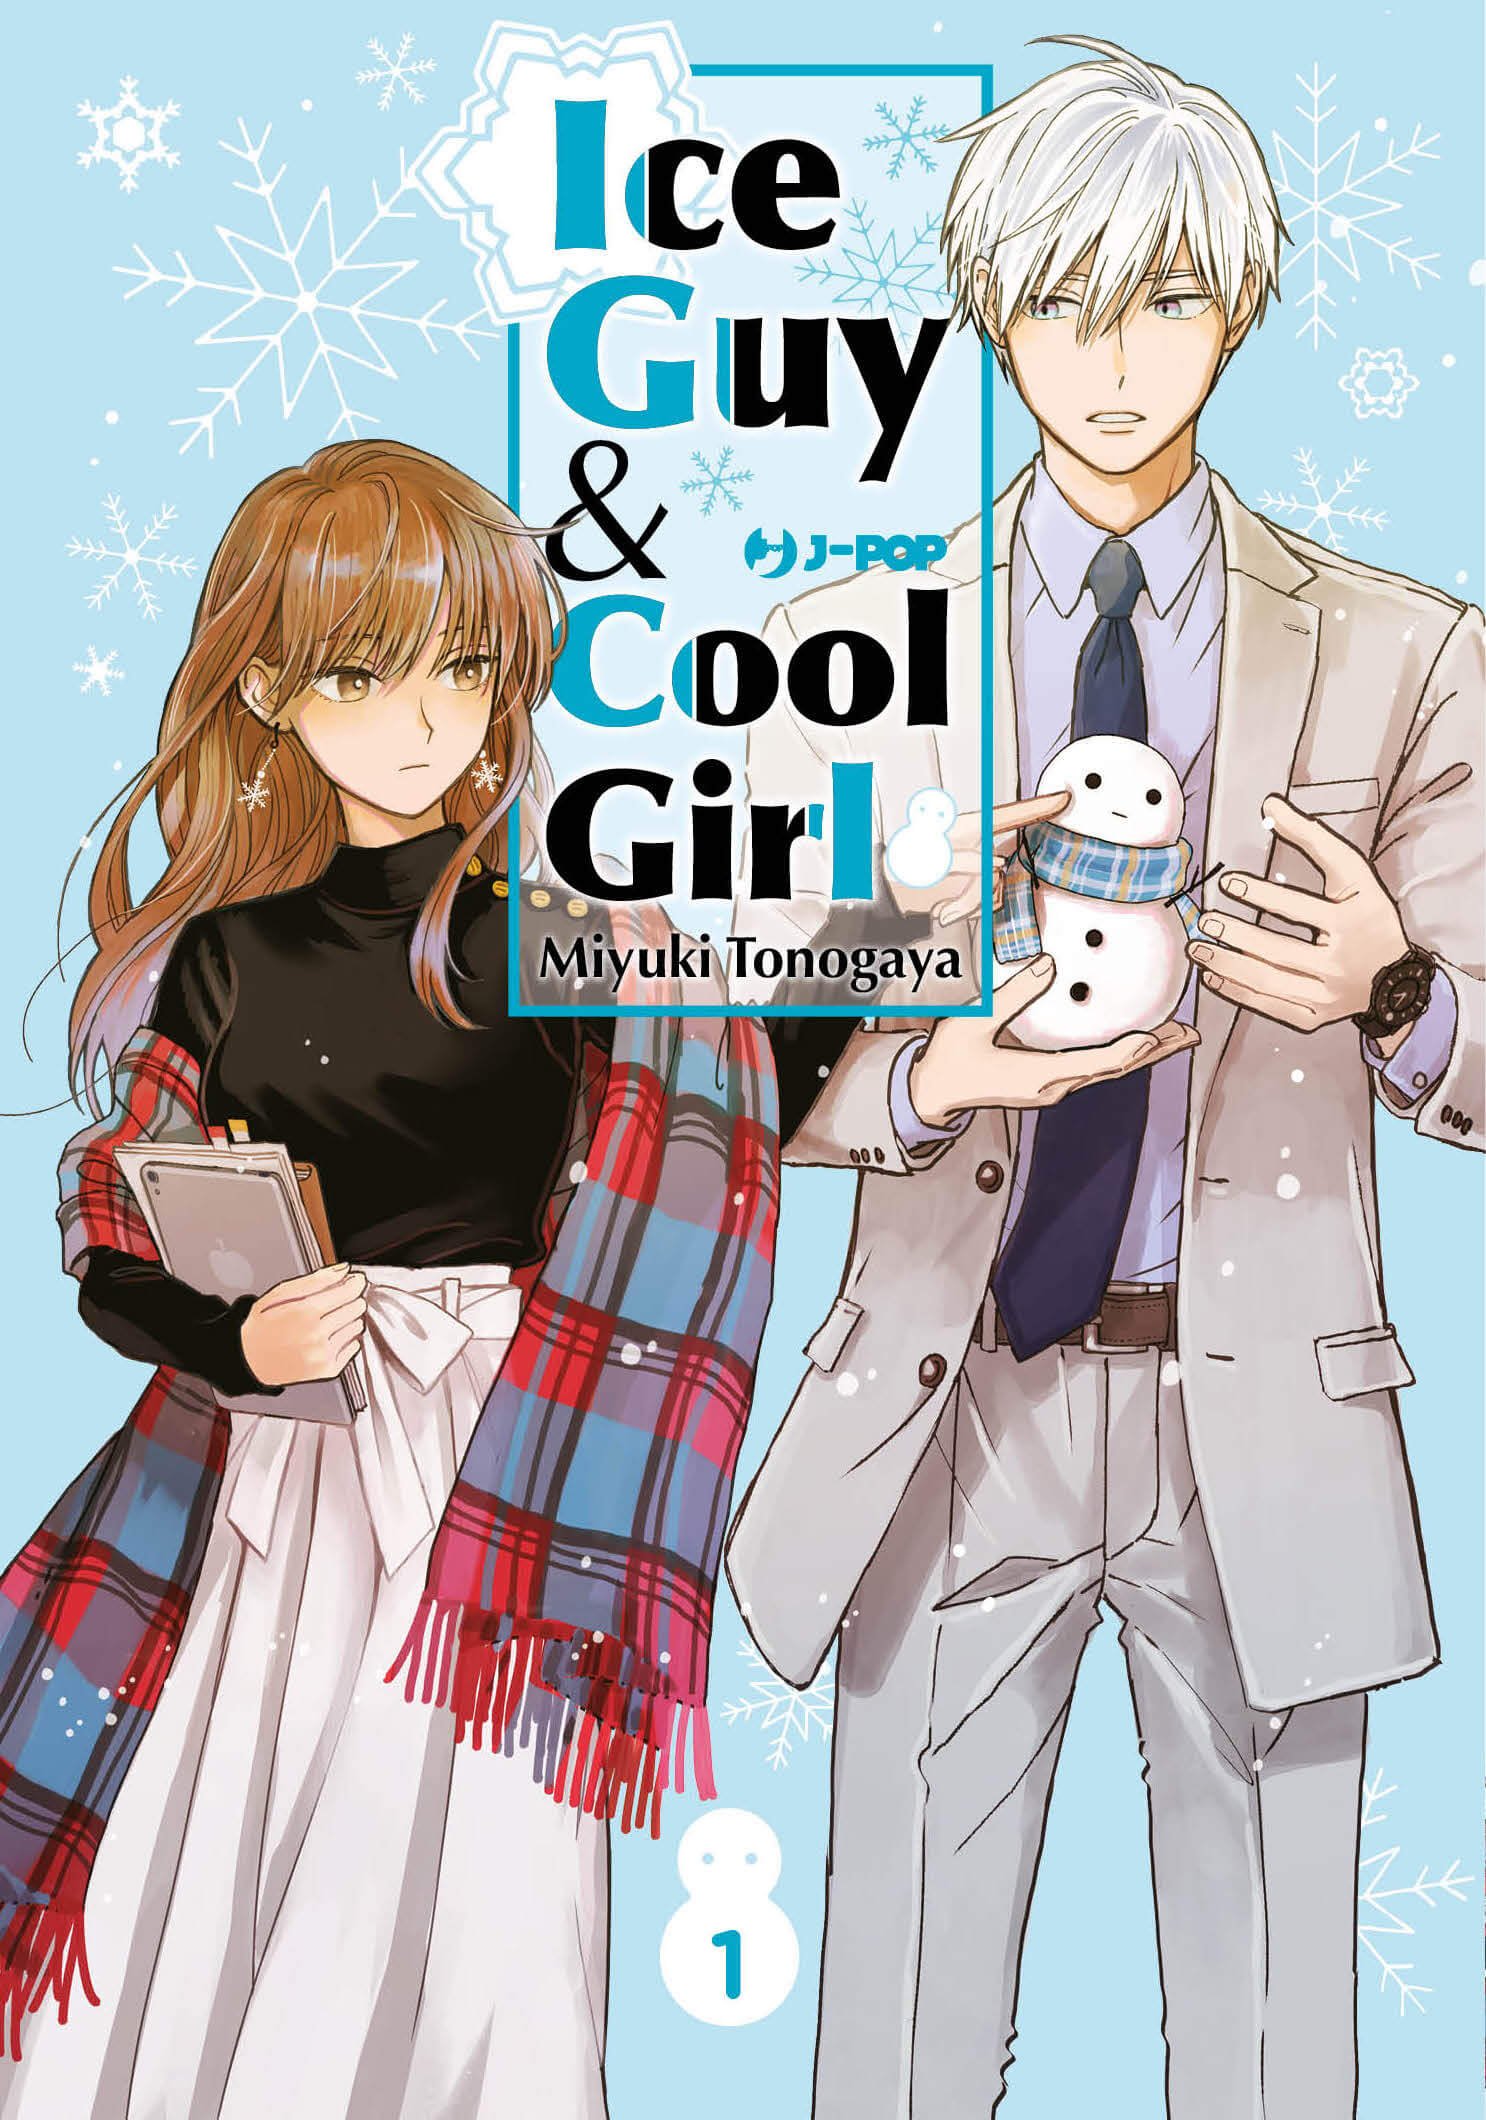 ICE GUY & COOL GIRL 01 JKT